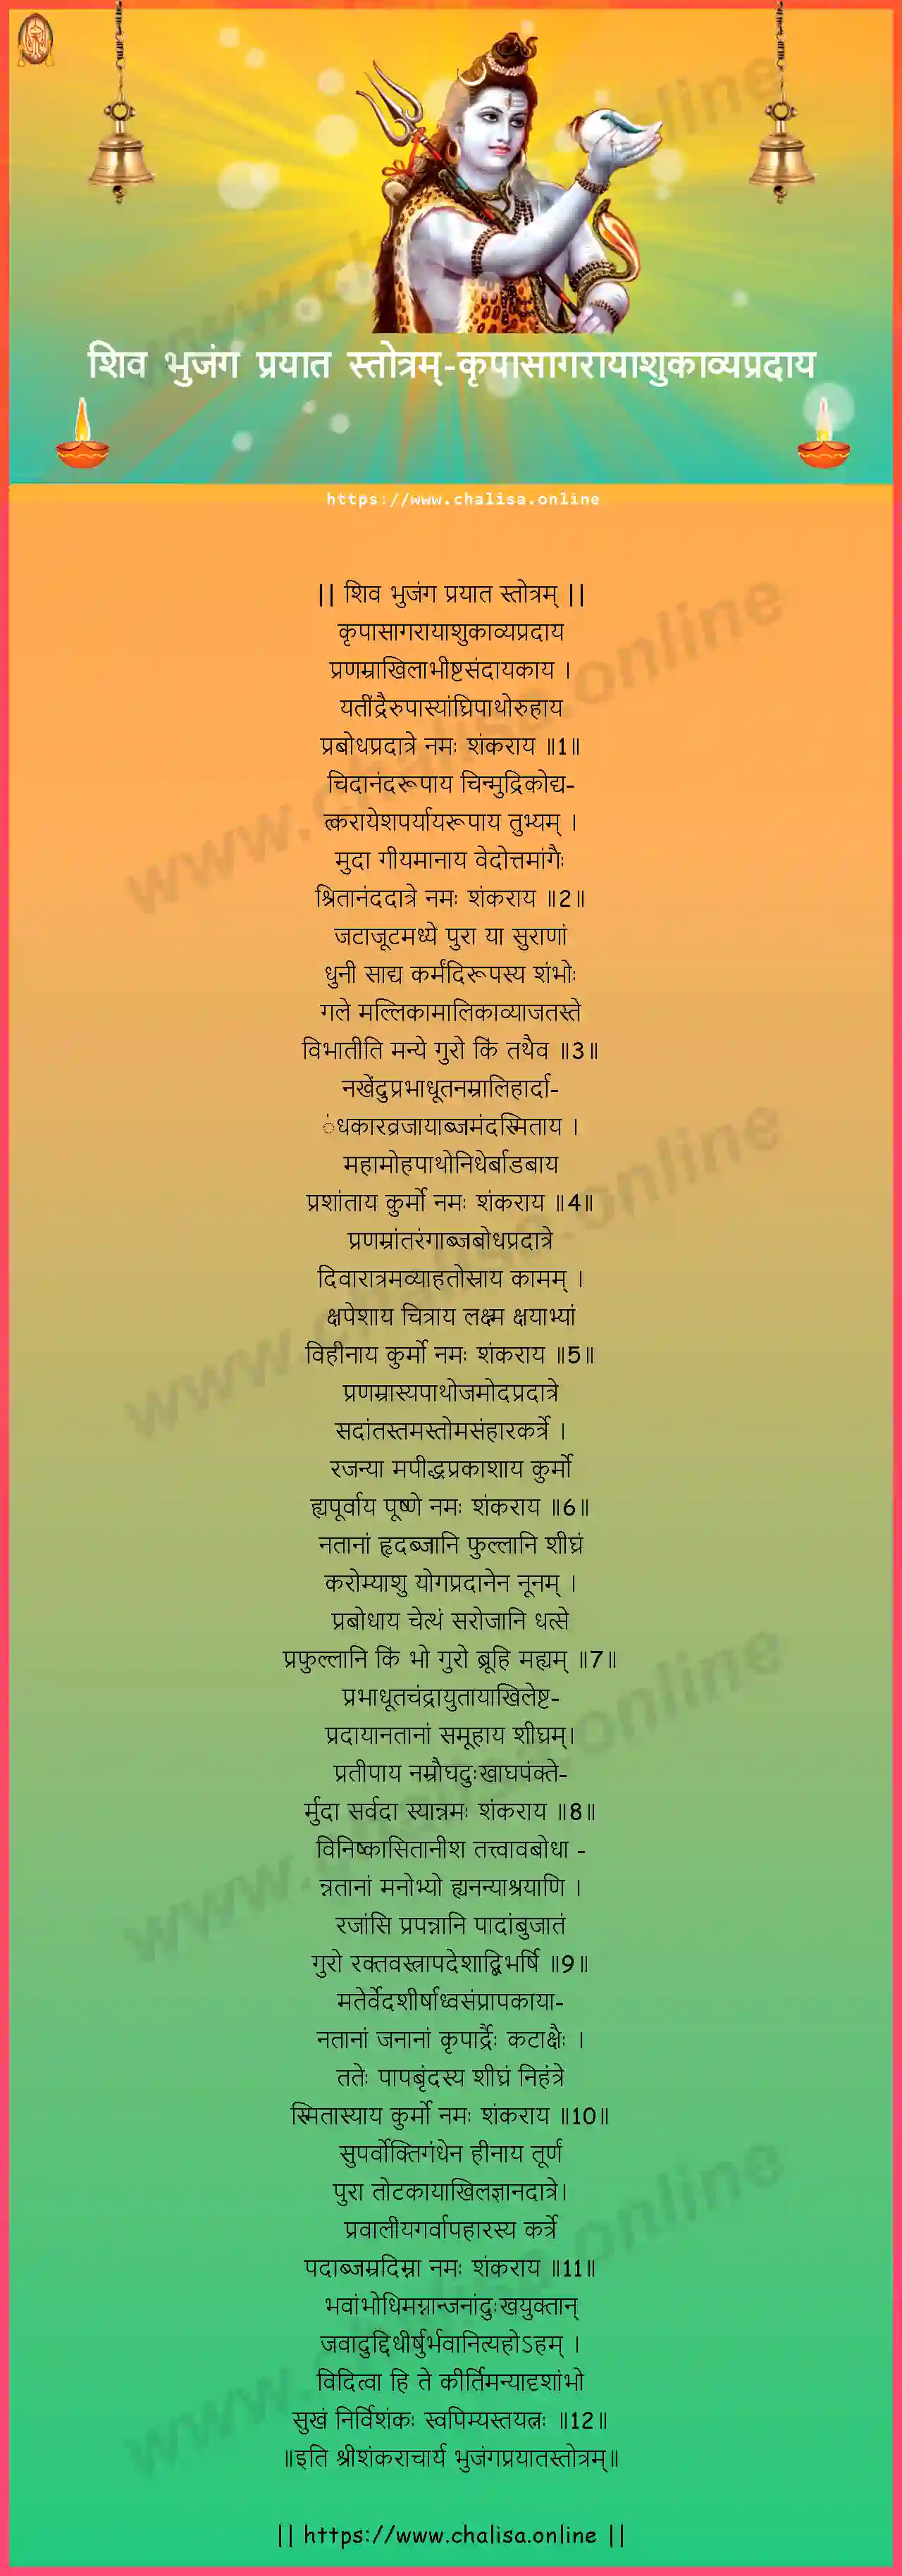 krpasagarayasukavyapradaya-shiva-bhujanga-prayata-stotram-hindi-hindi-lyrics-download